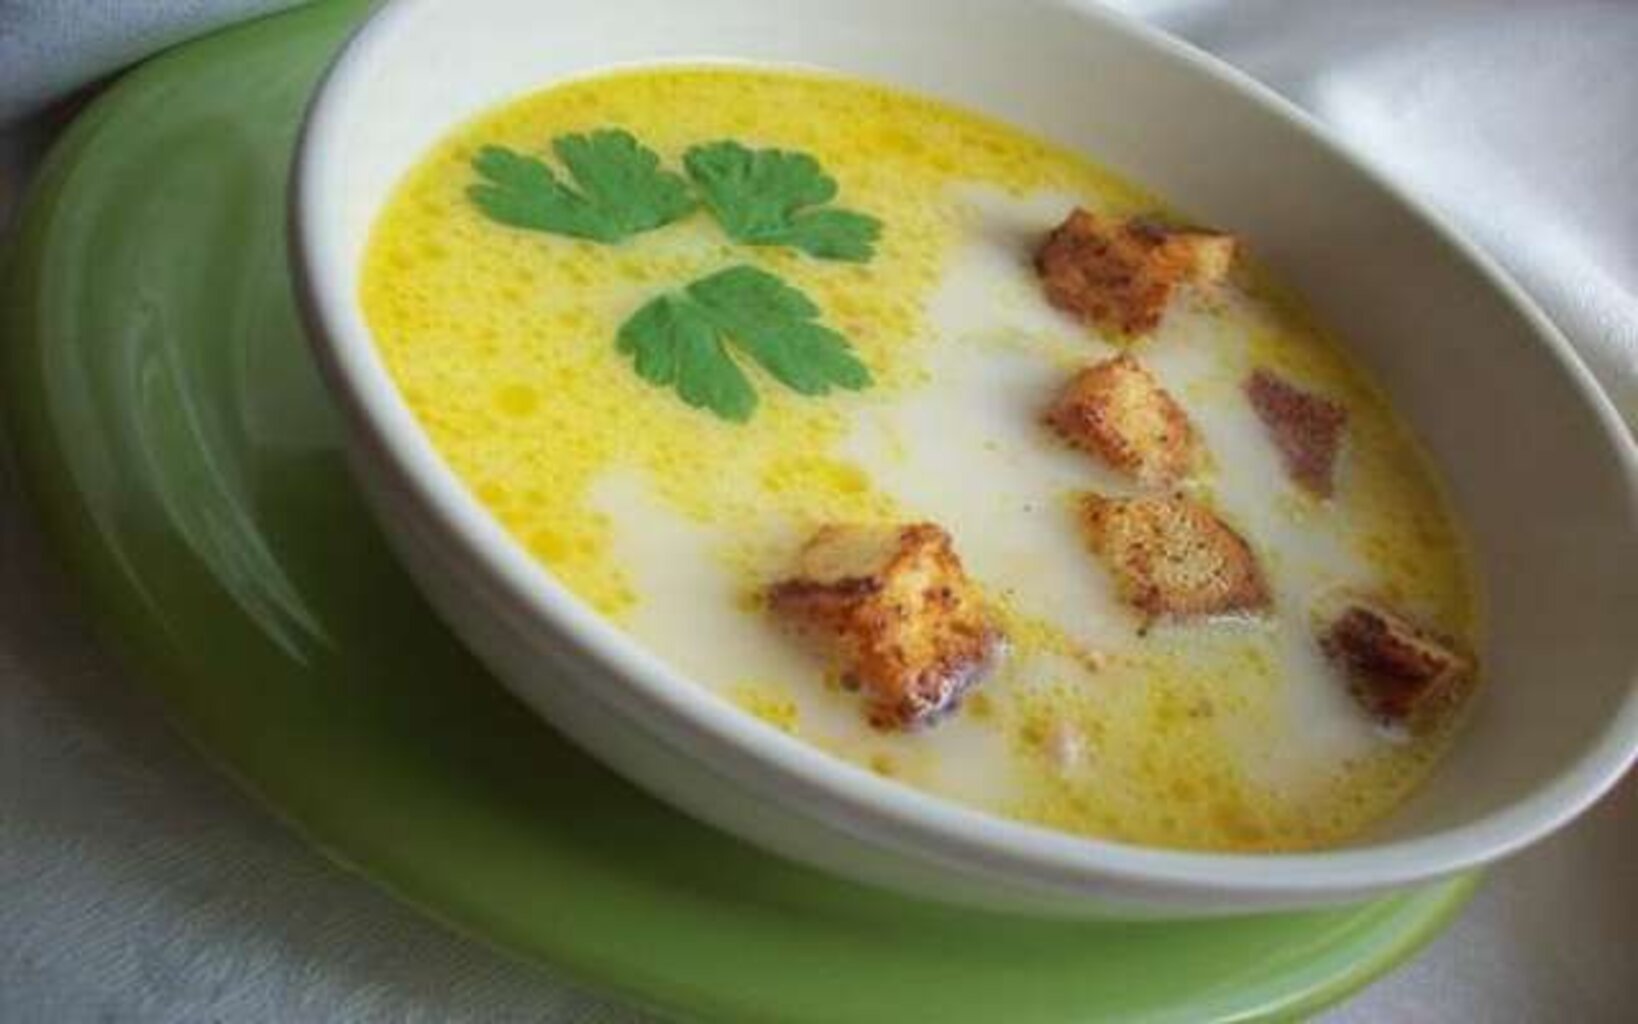 2017 году приготовили сырный суп. Сырный суп из плавленных сырков. Сырок плавленный для супа. Сырный суп с плавленным сырком. Суп с плавленным сыром.